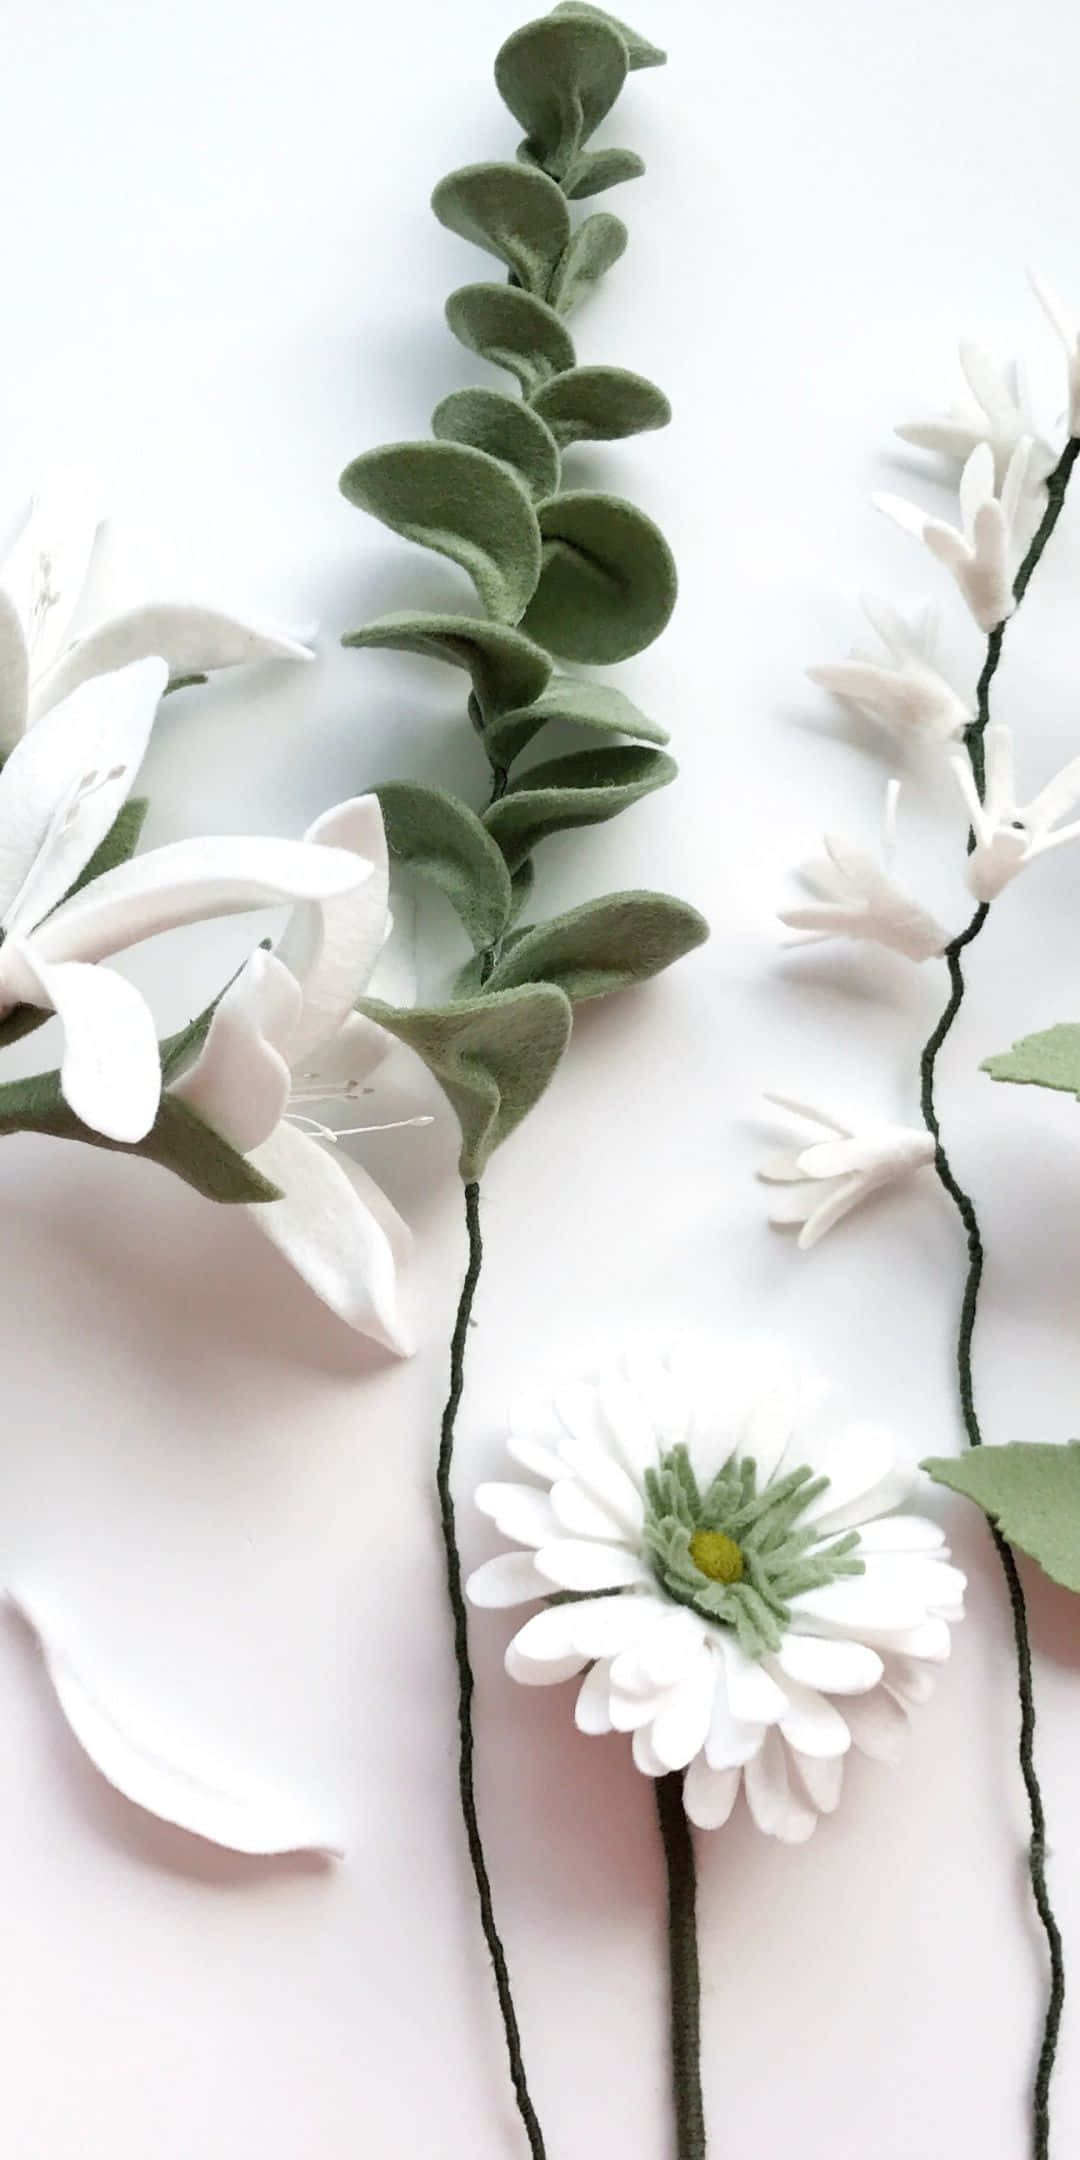 Einstrauß Schöner Weißer Blumen.